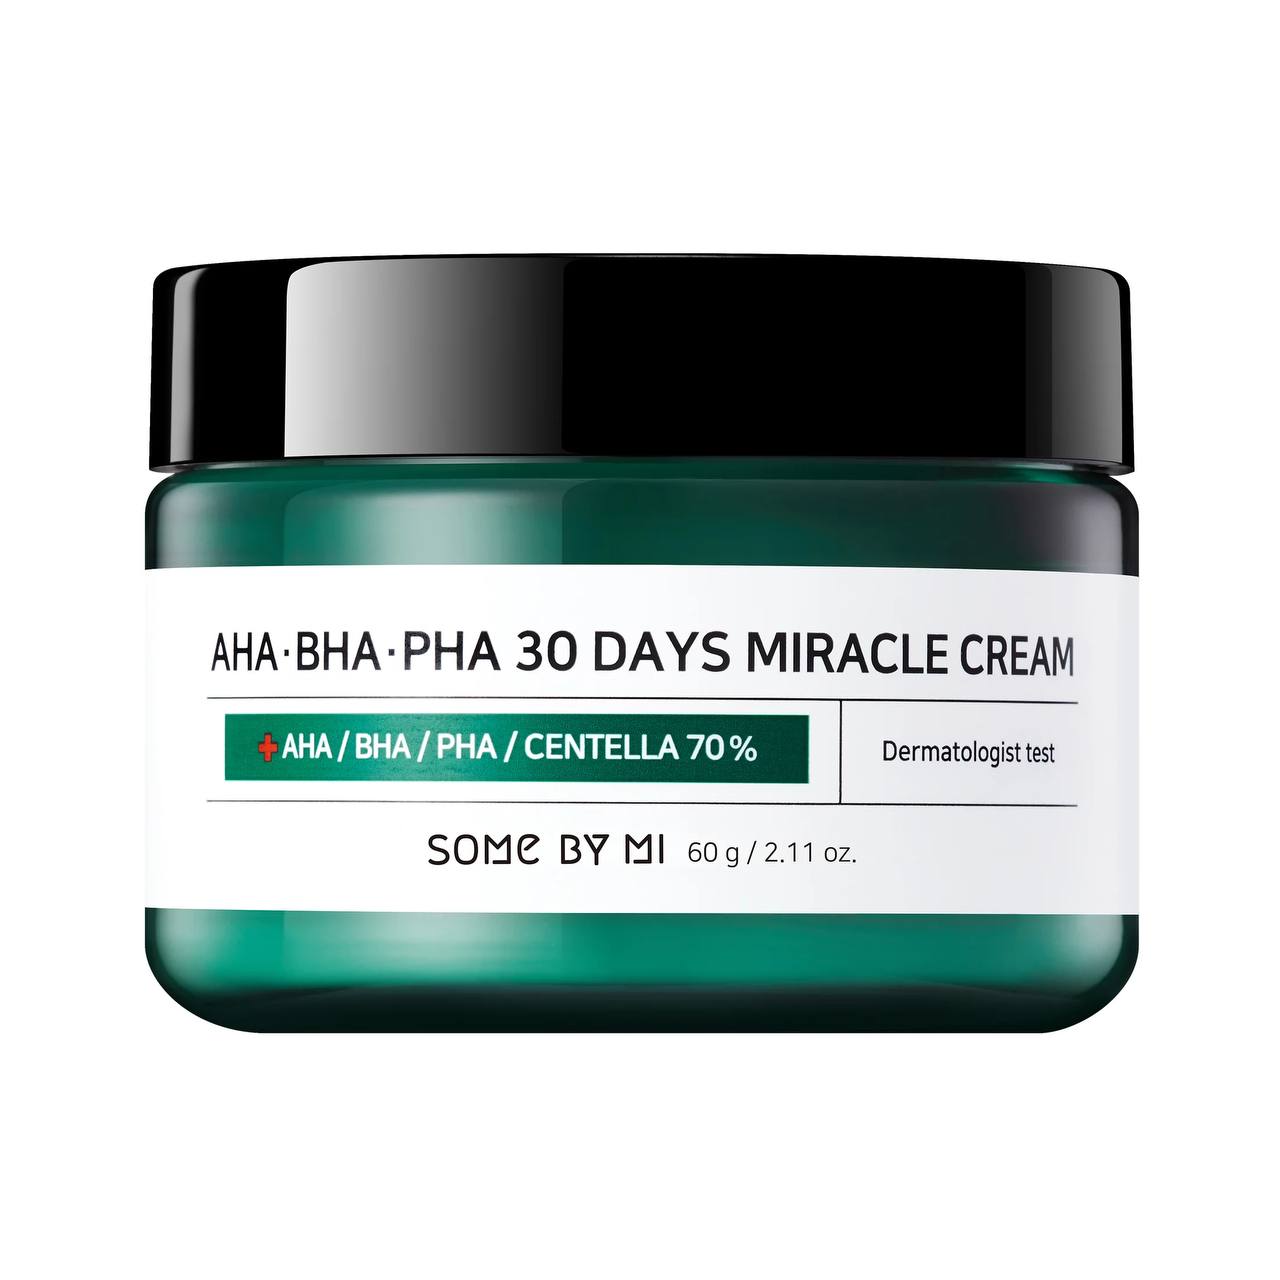 SOME BY MI Cremă regenerantă pentru pielea cu probleme AHA-BHA-PHA 30 Days Miracle Cream, 60 gr